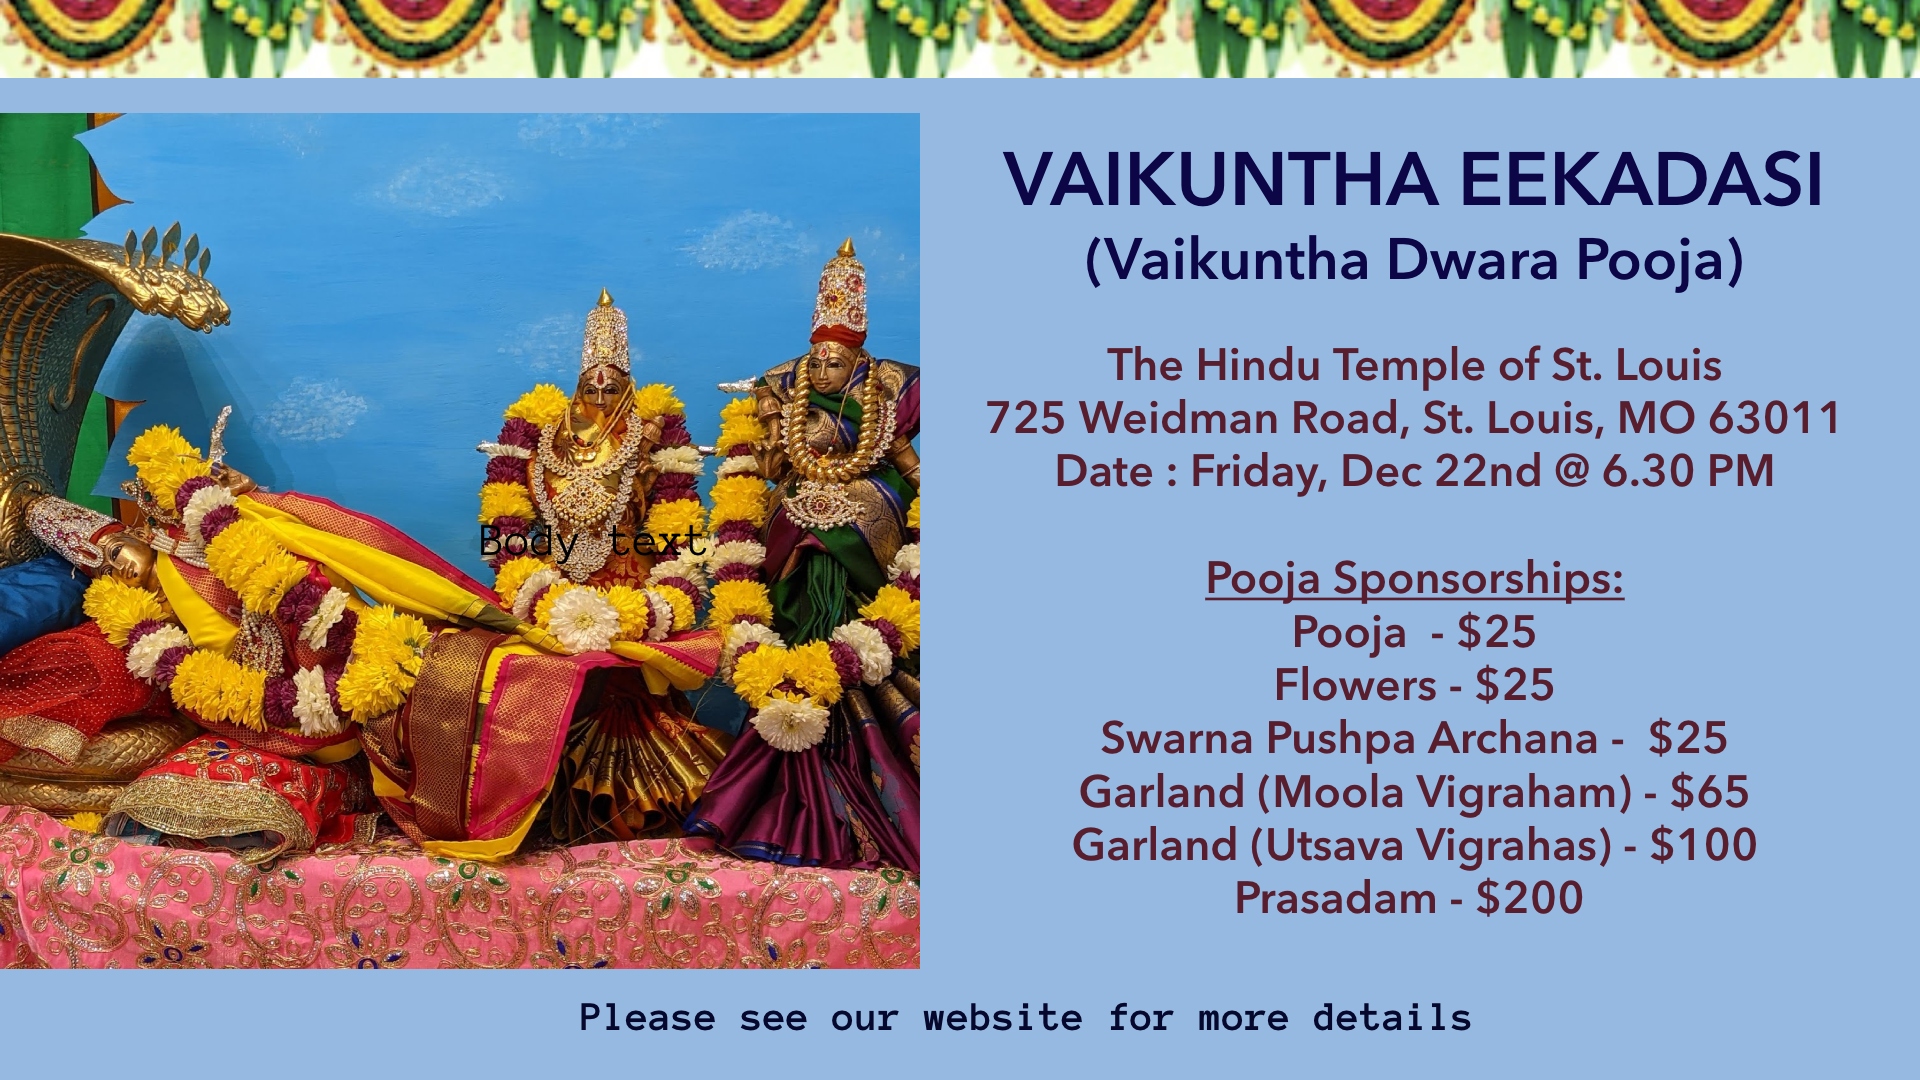 VAIKUNTHA EEKADASI (Vaikuntha Dwara Pooja), Friday, Dec 22nd @ 6.30 PM